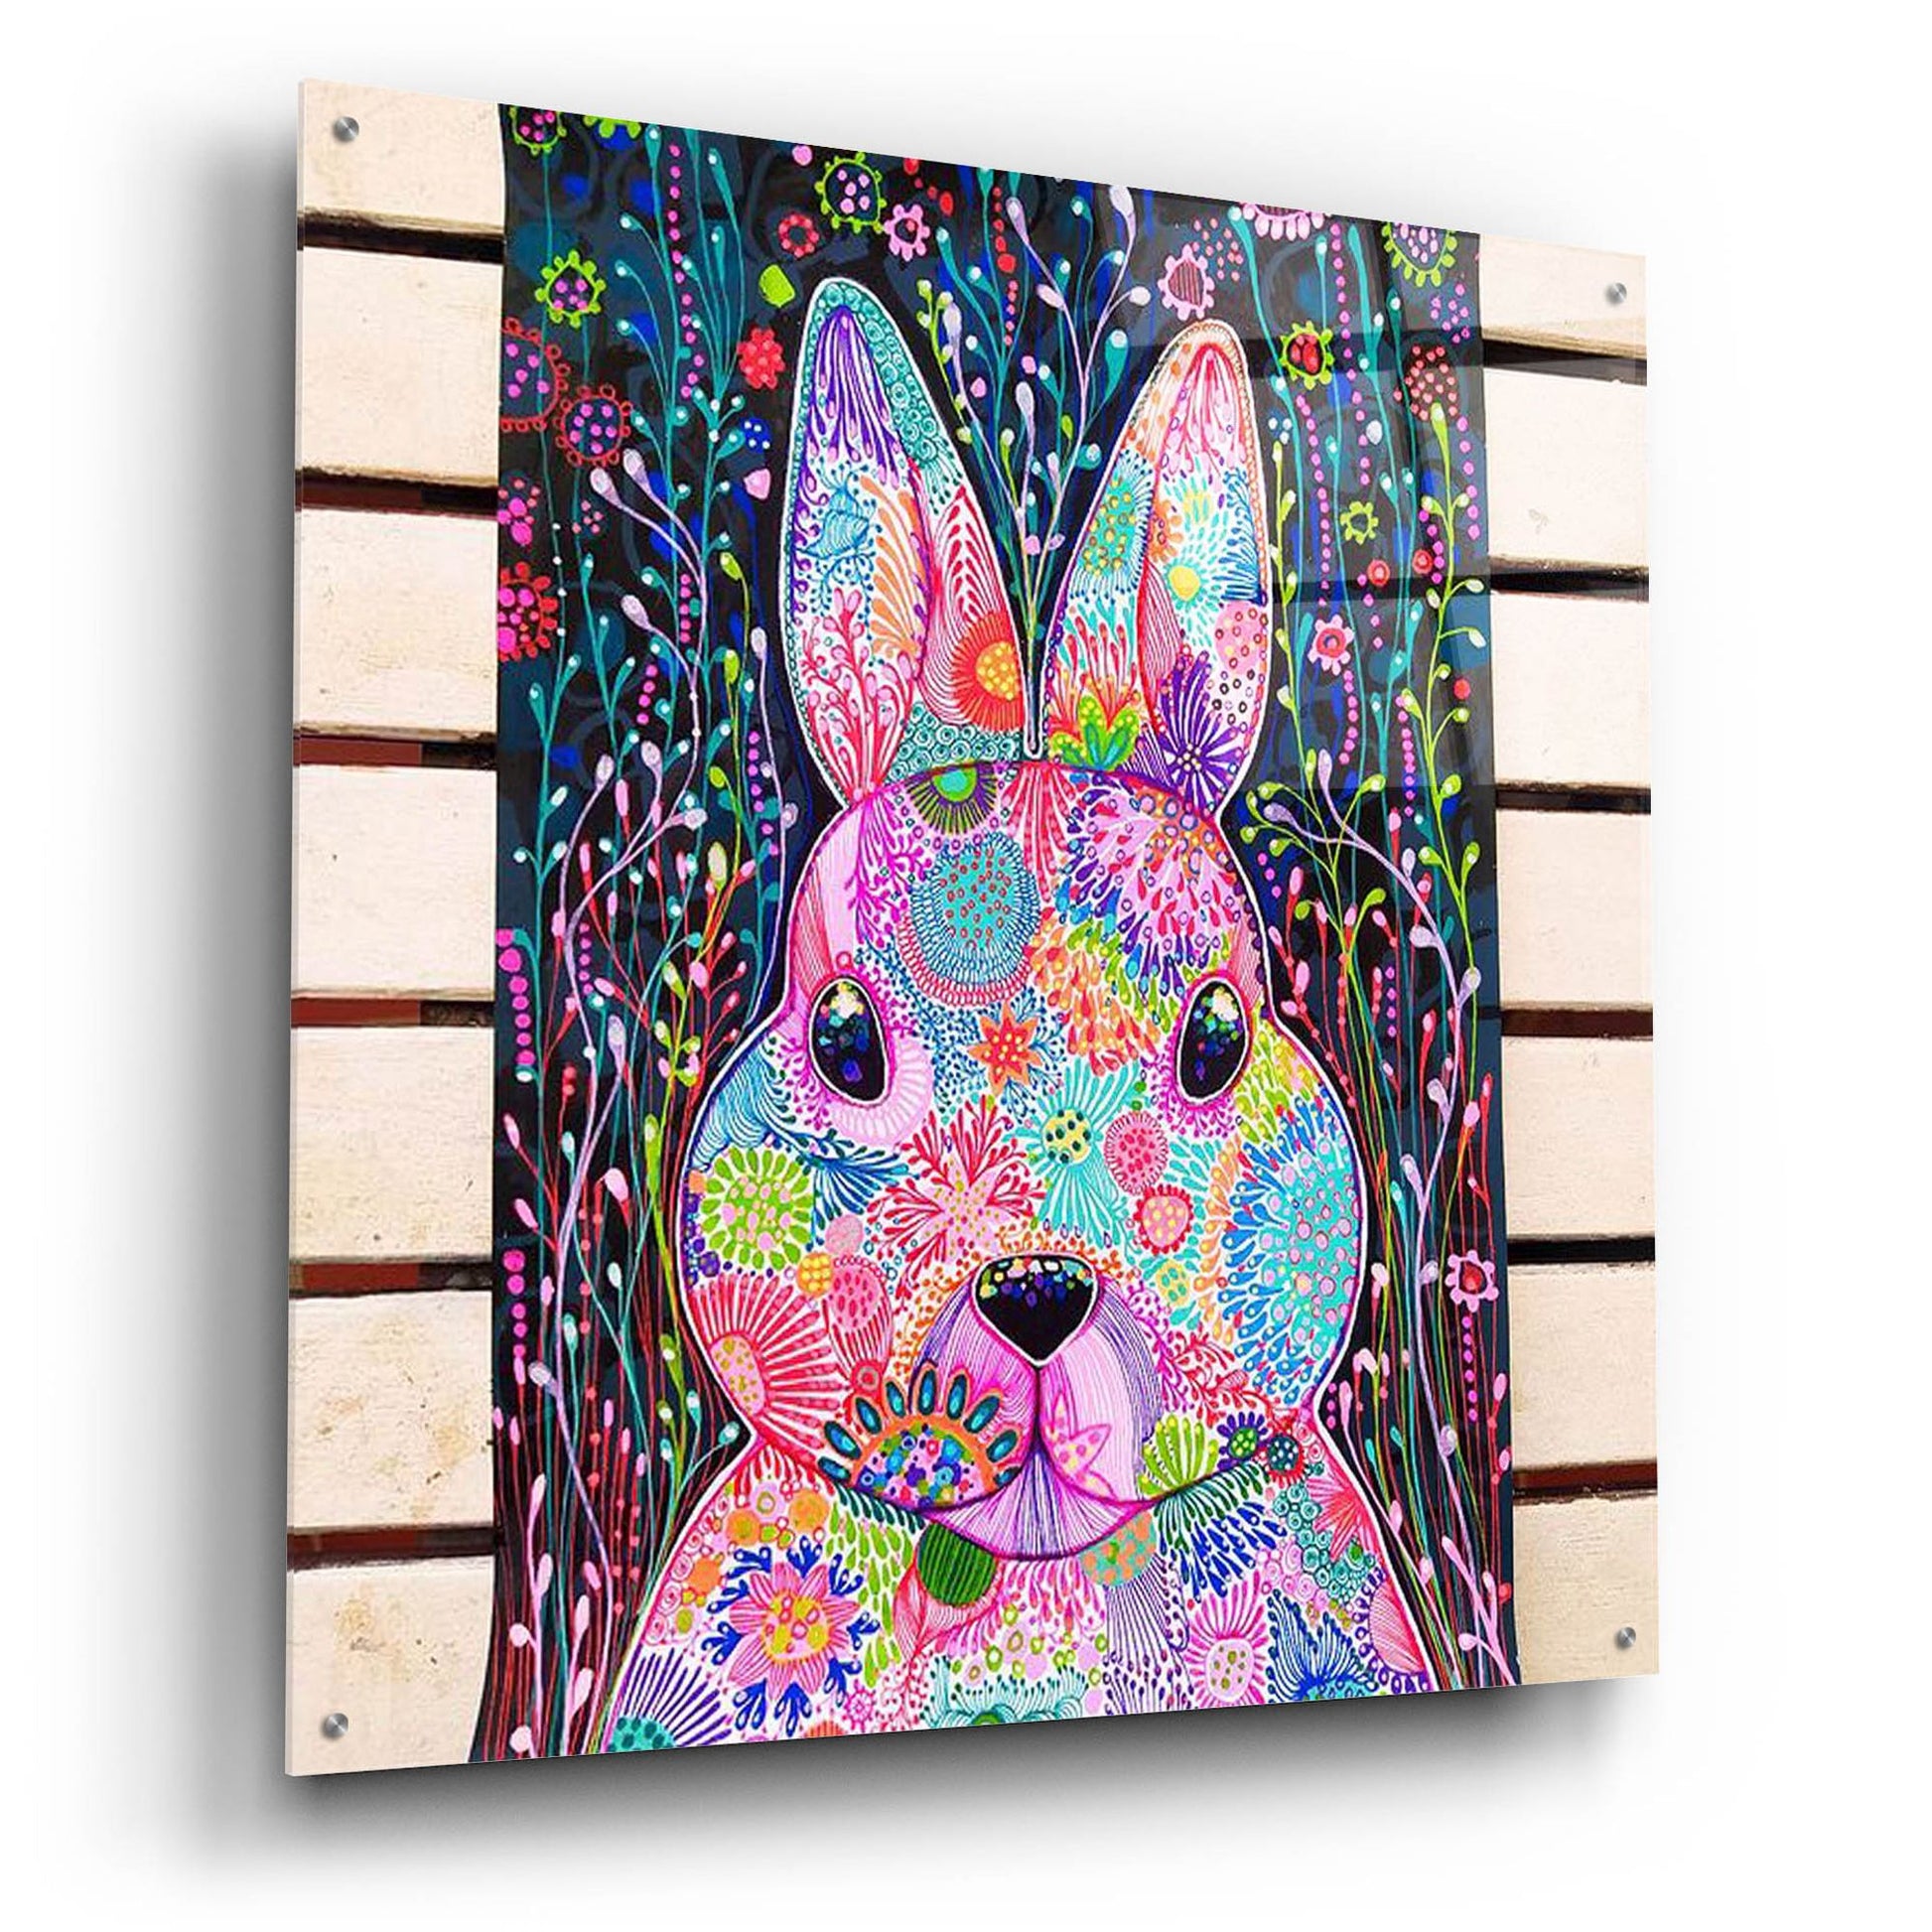 Epic Art 'Bunny2 by Noemi Ibarz, Acrylic Glass Wall Art,36x36